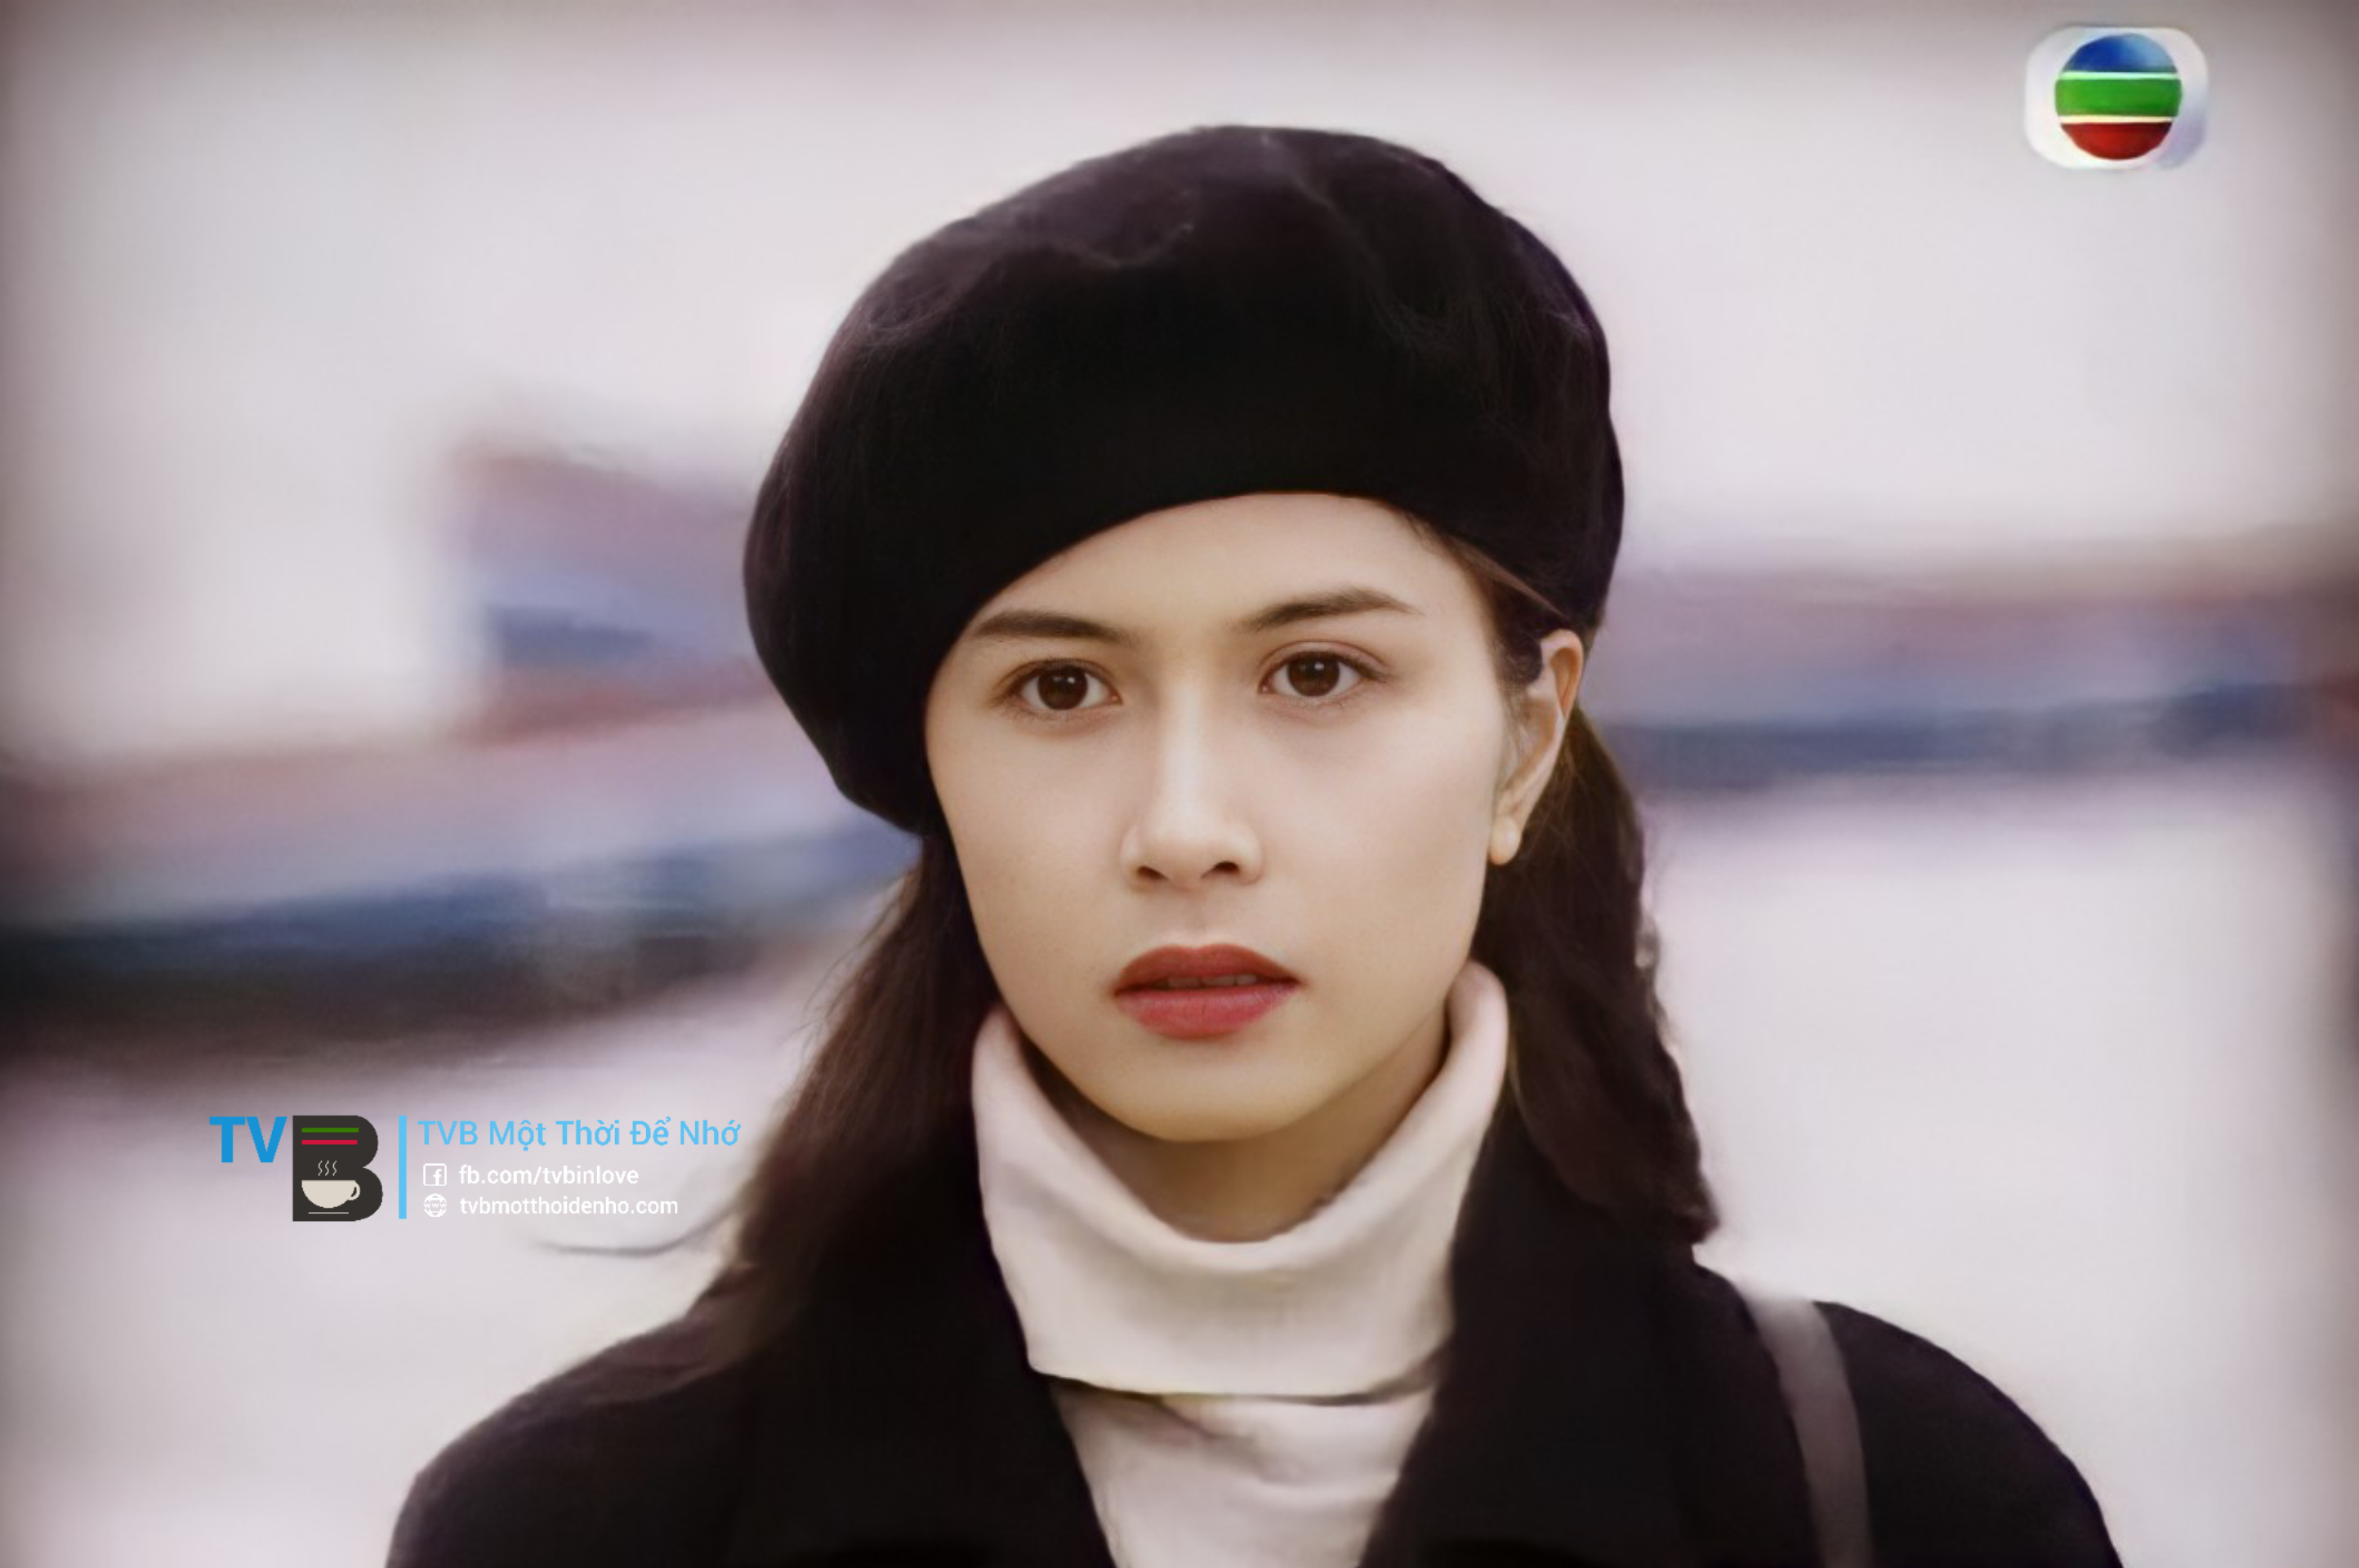 特に「第3フレンチタイプ」での「ViHaiDi」の役割は、Thieu MyKyの演技力を際立たせています。 映画では、彼女はガーリーでいっぱいのベレー帽（ベレー帽）を身に着けて、長い髪で登場します。 この見た目は本当に忘れられません。